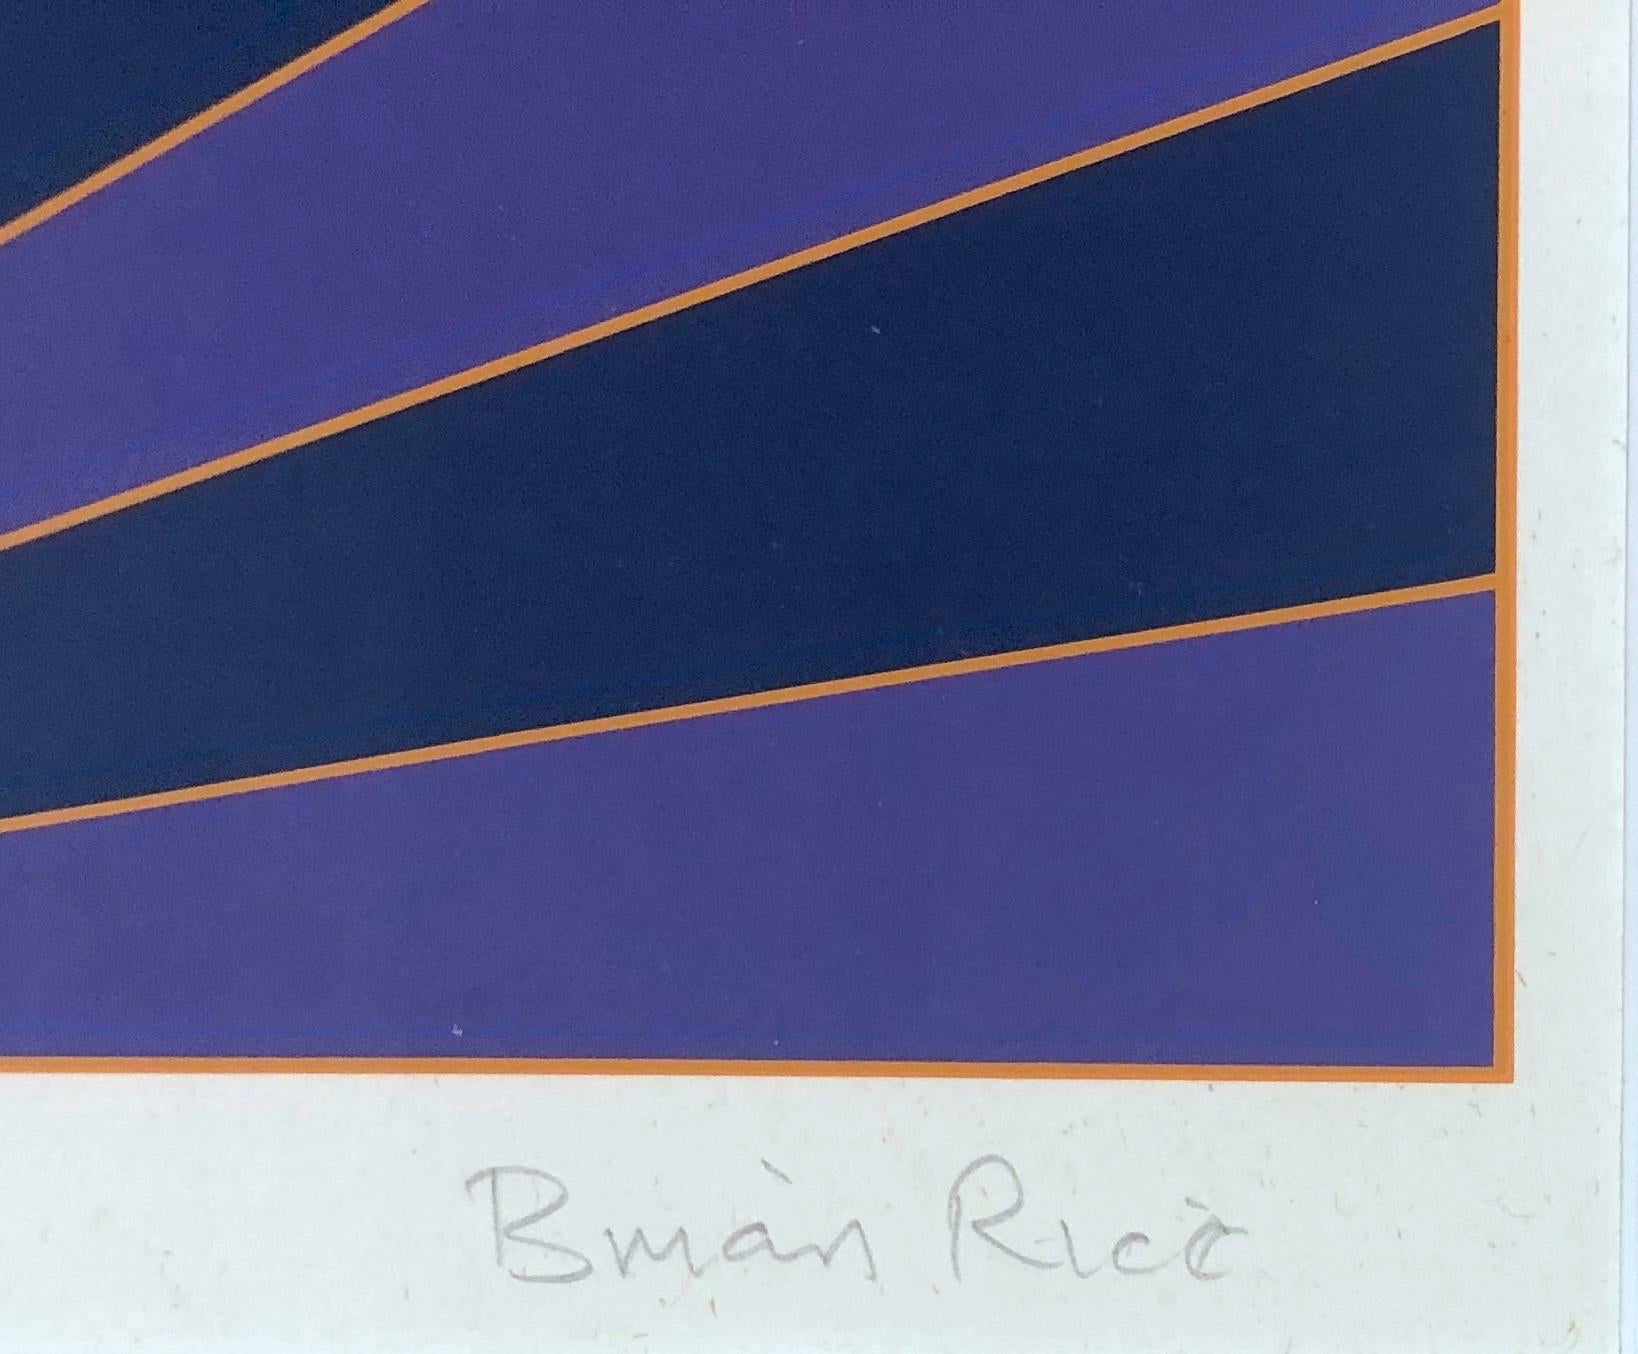 L'illusion géométrique : impression de paysage abstrait encadrée en violet et bleu - Print de Brian Rice